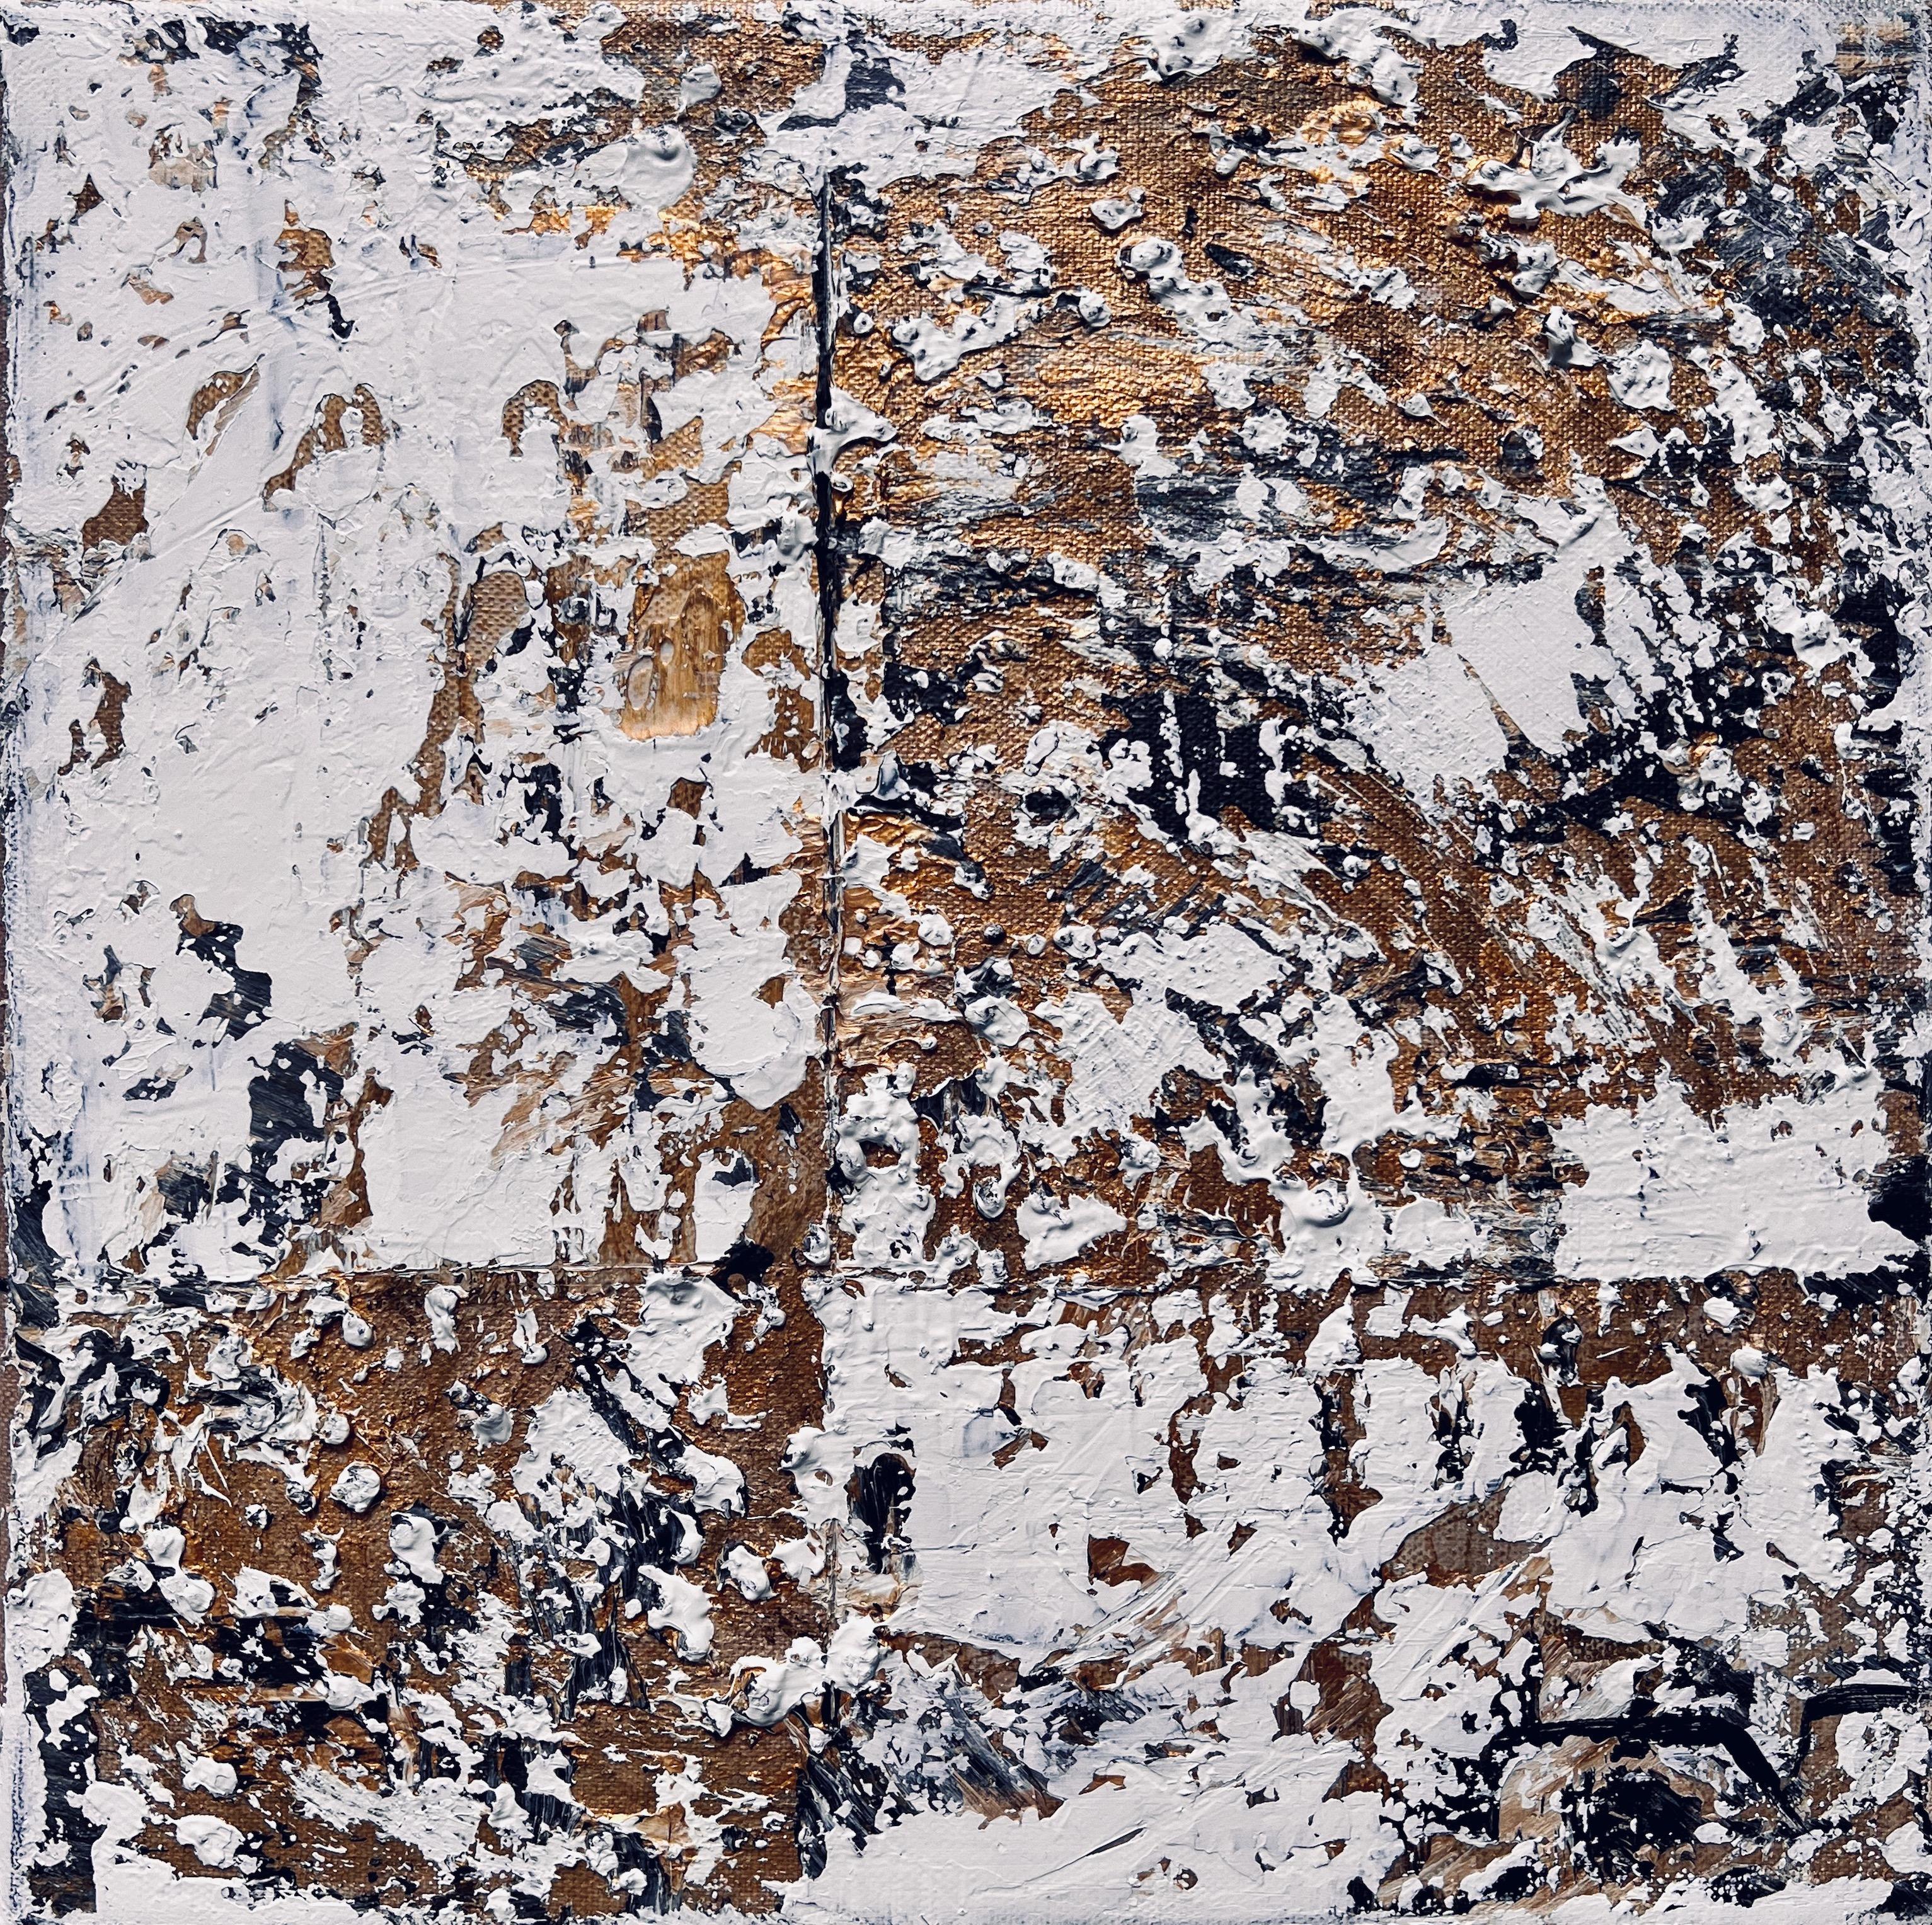 Acrylique, texture et béton concassé sur toile

Marie Anne-Marie Decamp est une artiste française née en 1973 qui vit et travaille à CHAMBLY dans l'Oise en Picardie, près de Paris. Elle appartient au mouvement expressionniste. Elle est référencée